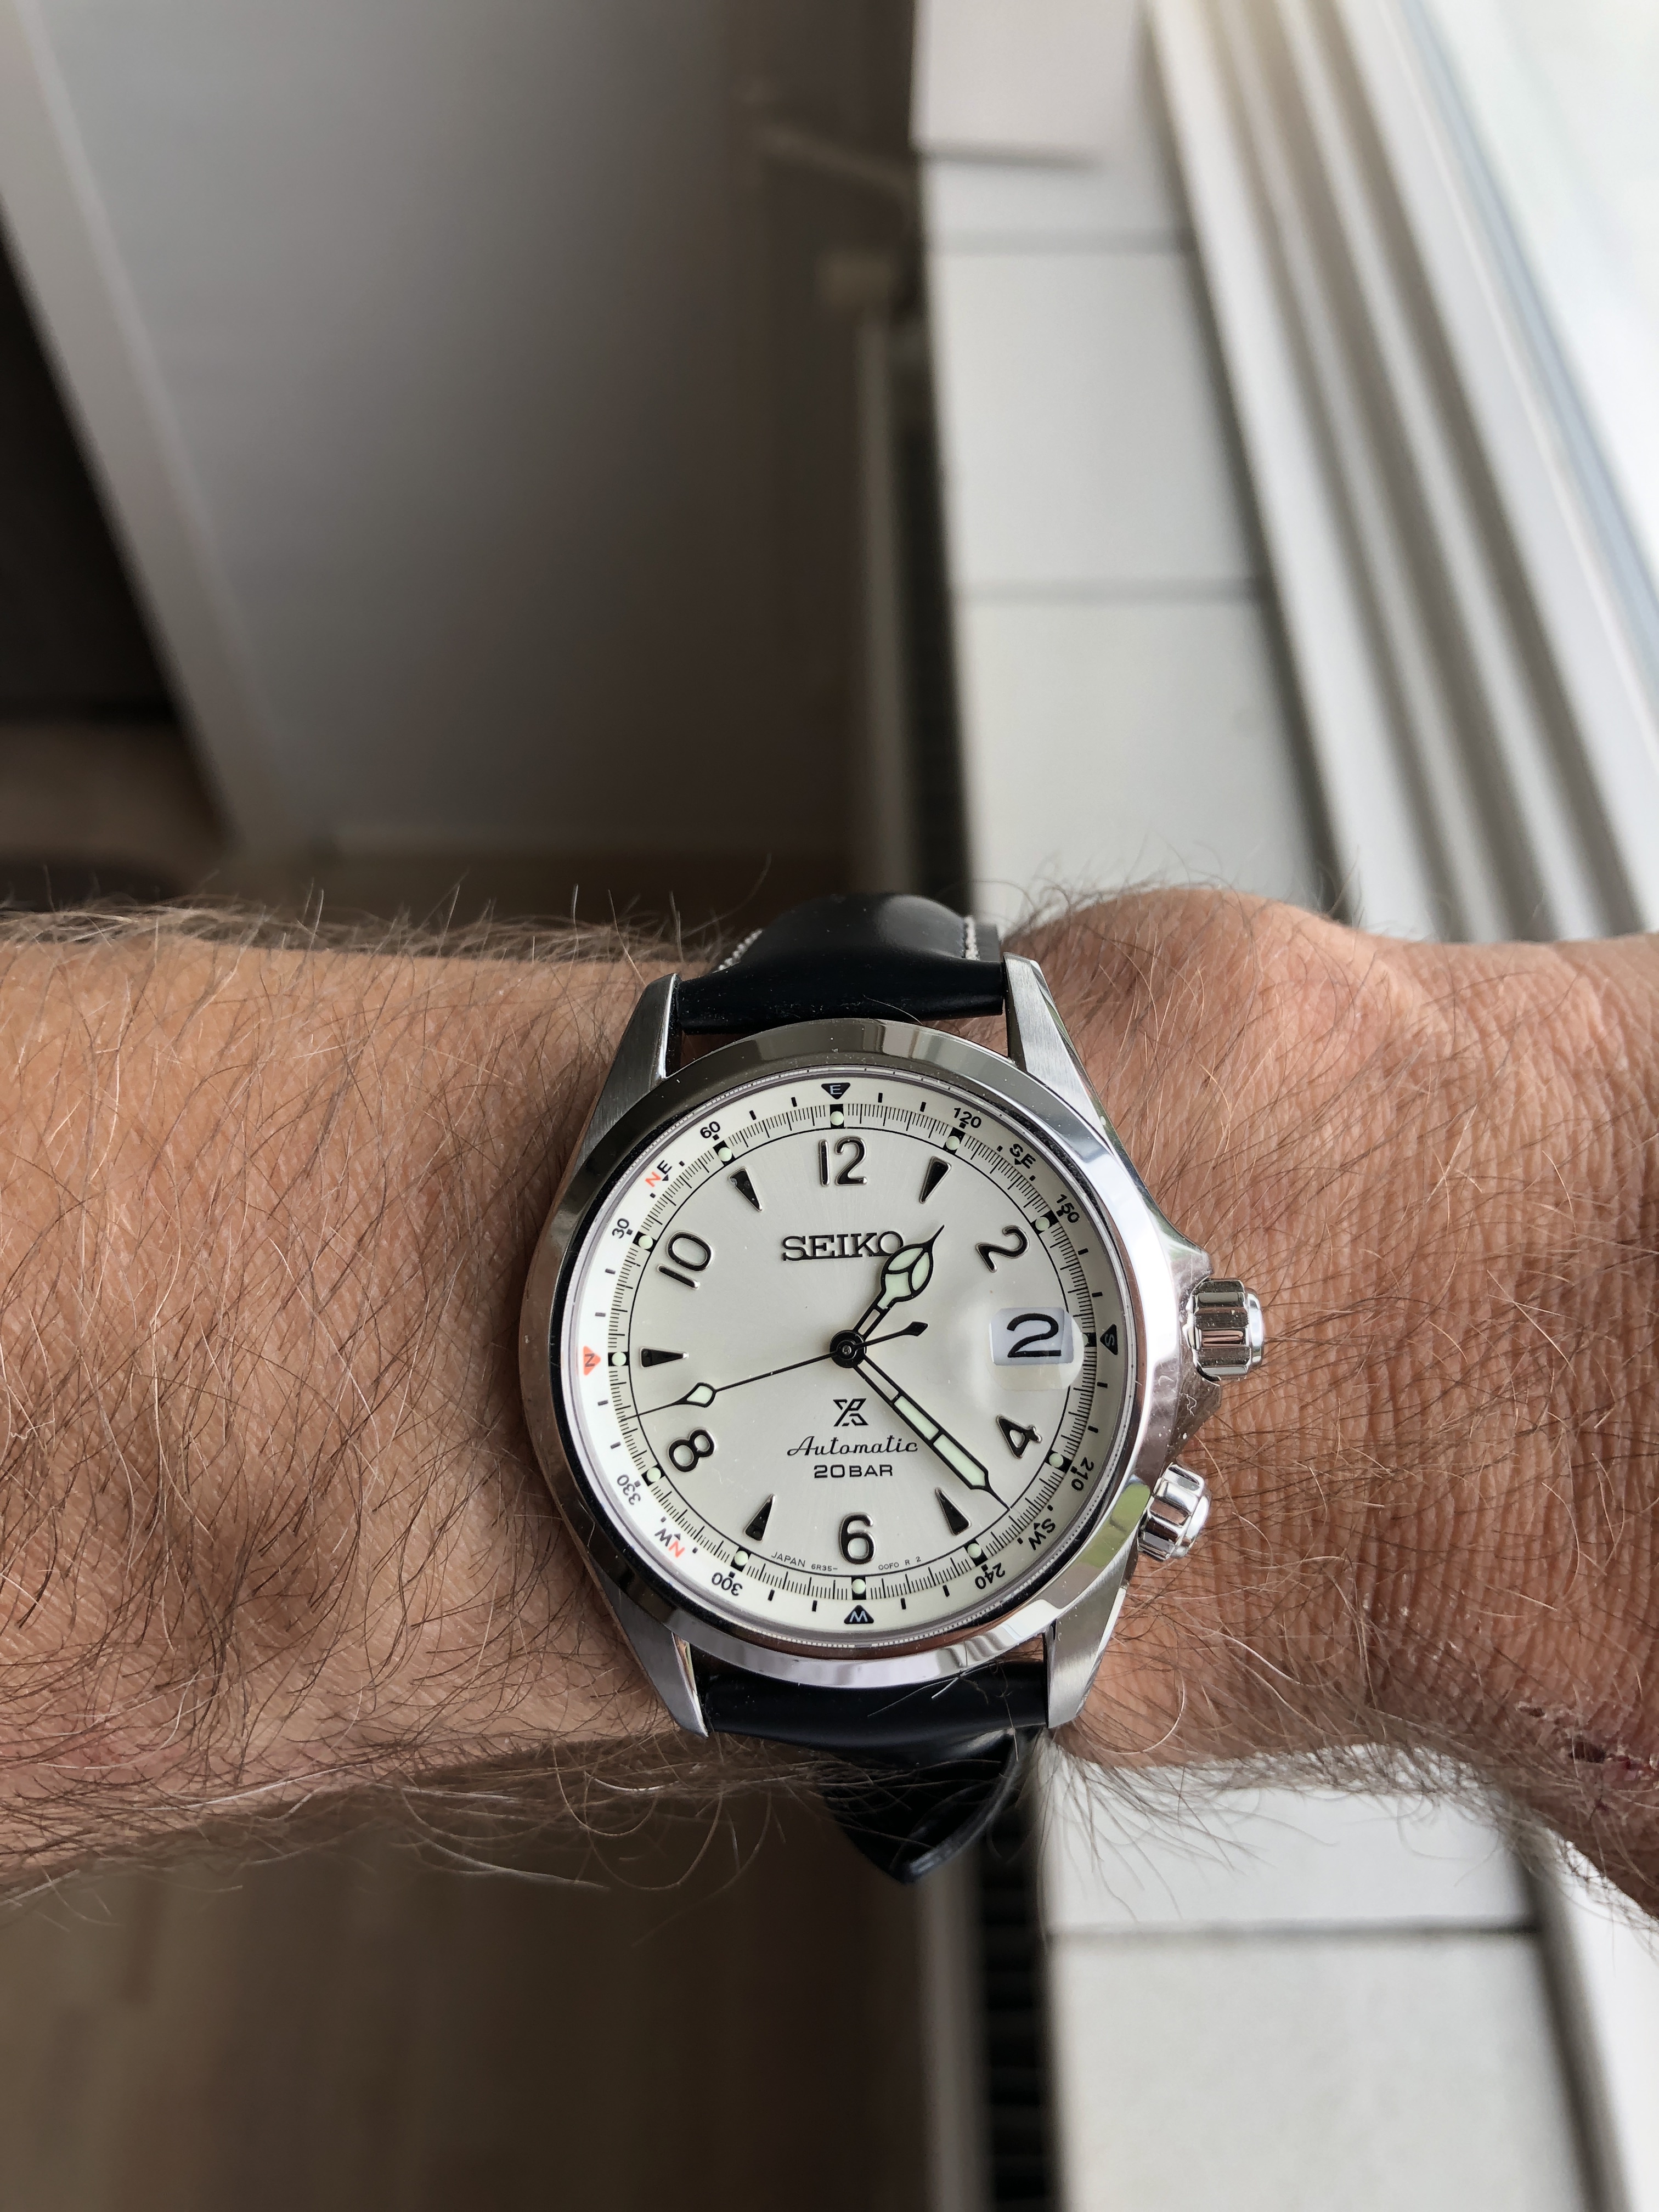 Nieuwe aanwinst: Seiko Alpinist SPB119 - Algemene Horlogepraat -   - het forum voor liefhebbers van horloges